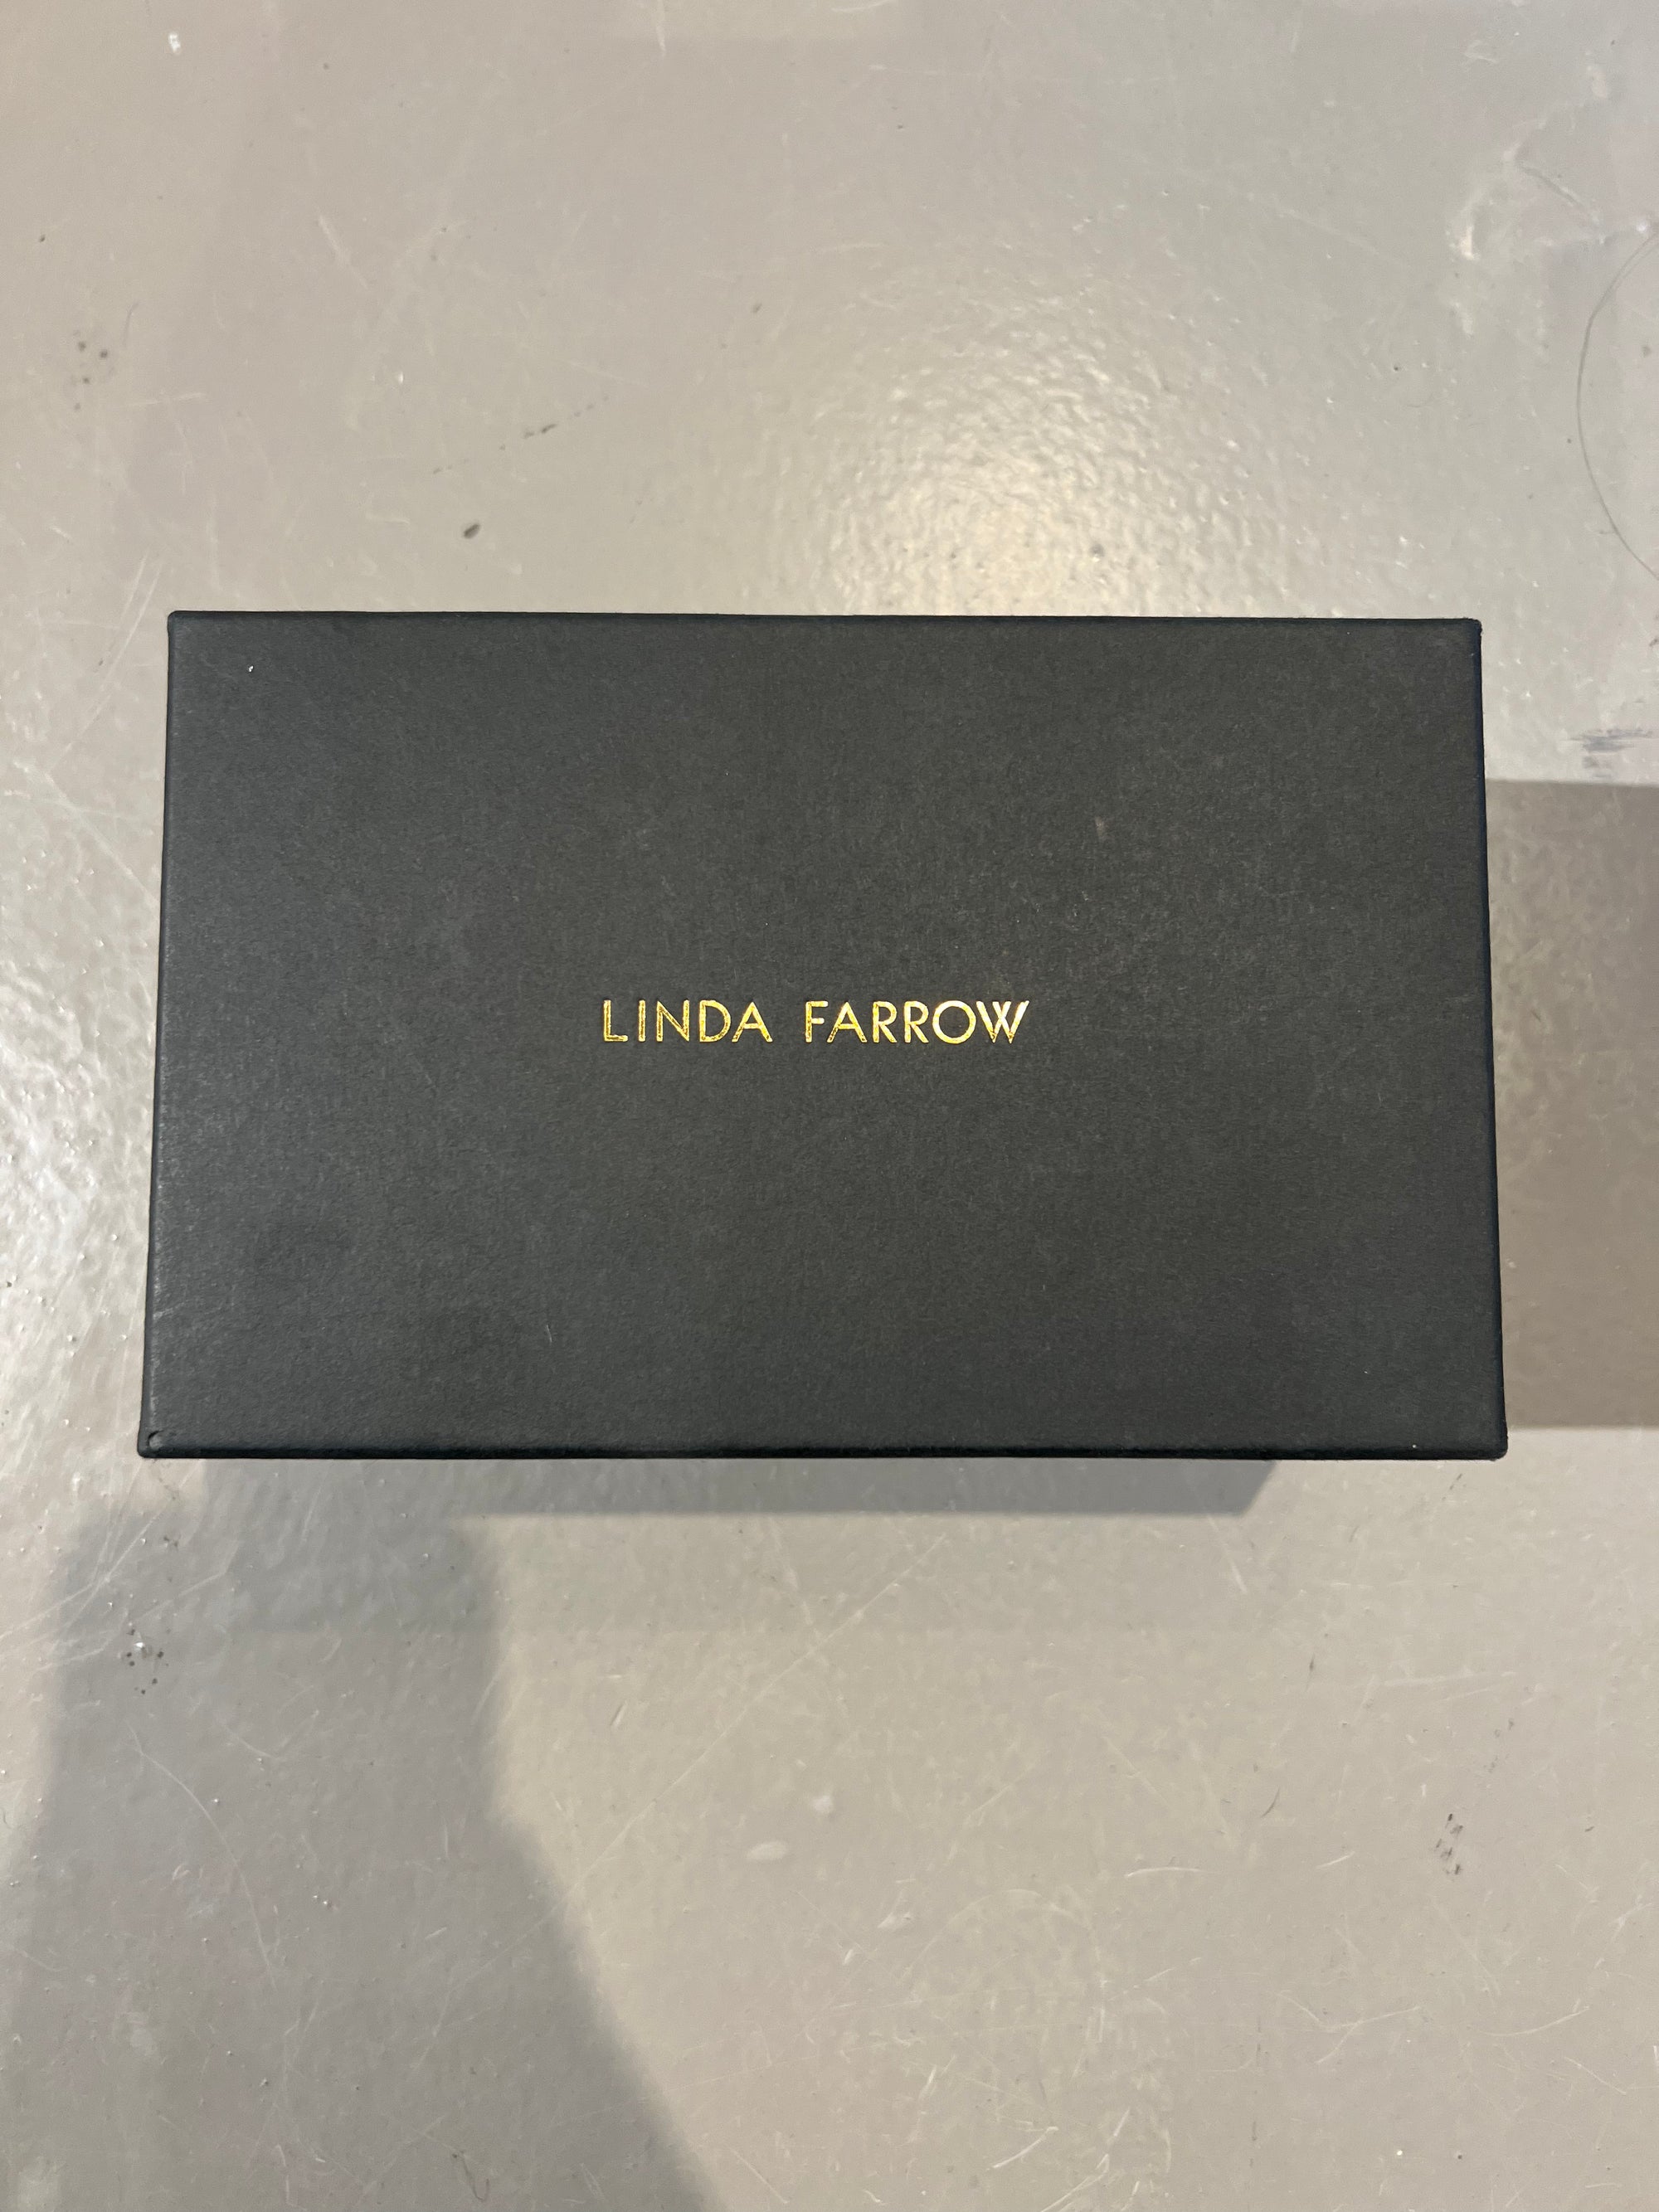 Produktbild von einem Vintage Linda Farrow Sonnenbrillen-Case vor grauem Hintergrund.